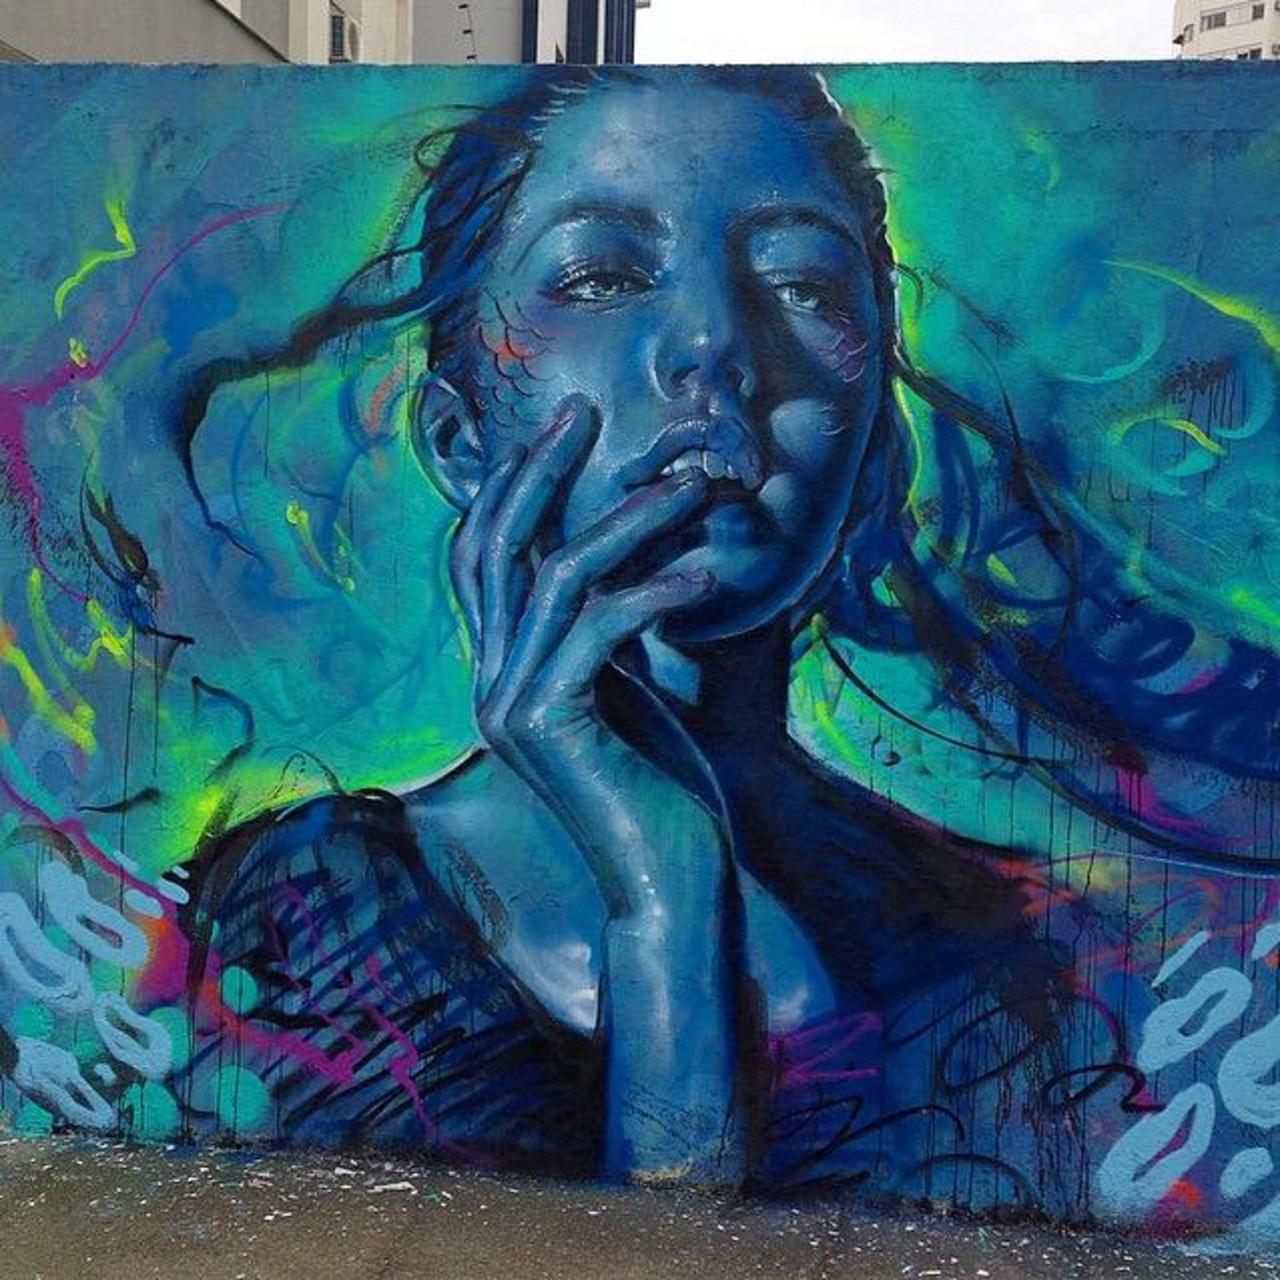 Thiago Valdi new Street Art piece titled 'Day Dreamer'

#art #mural #graffiti #streetart http://t.co/GLTDDQqOPJ